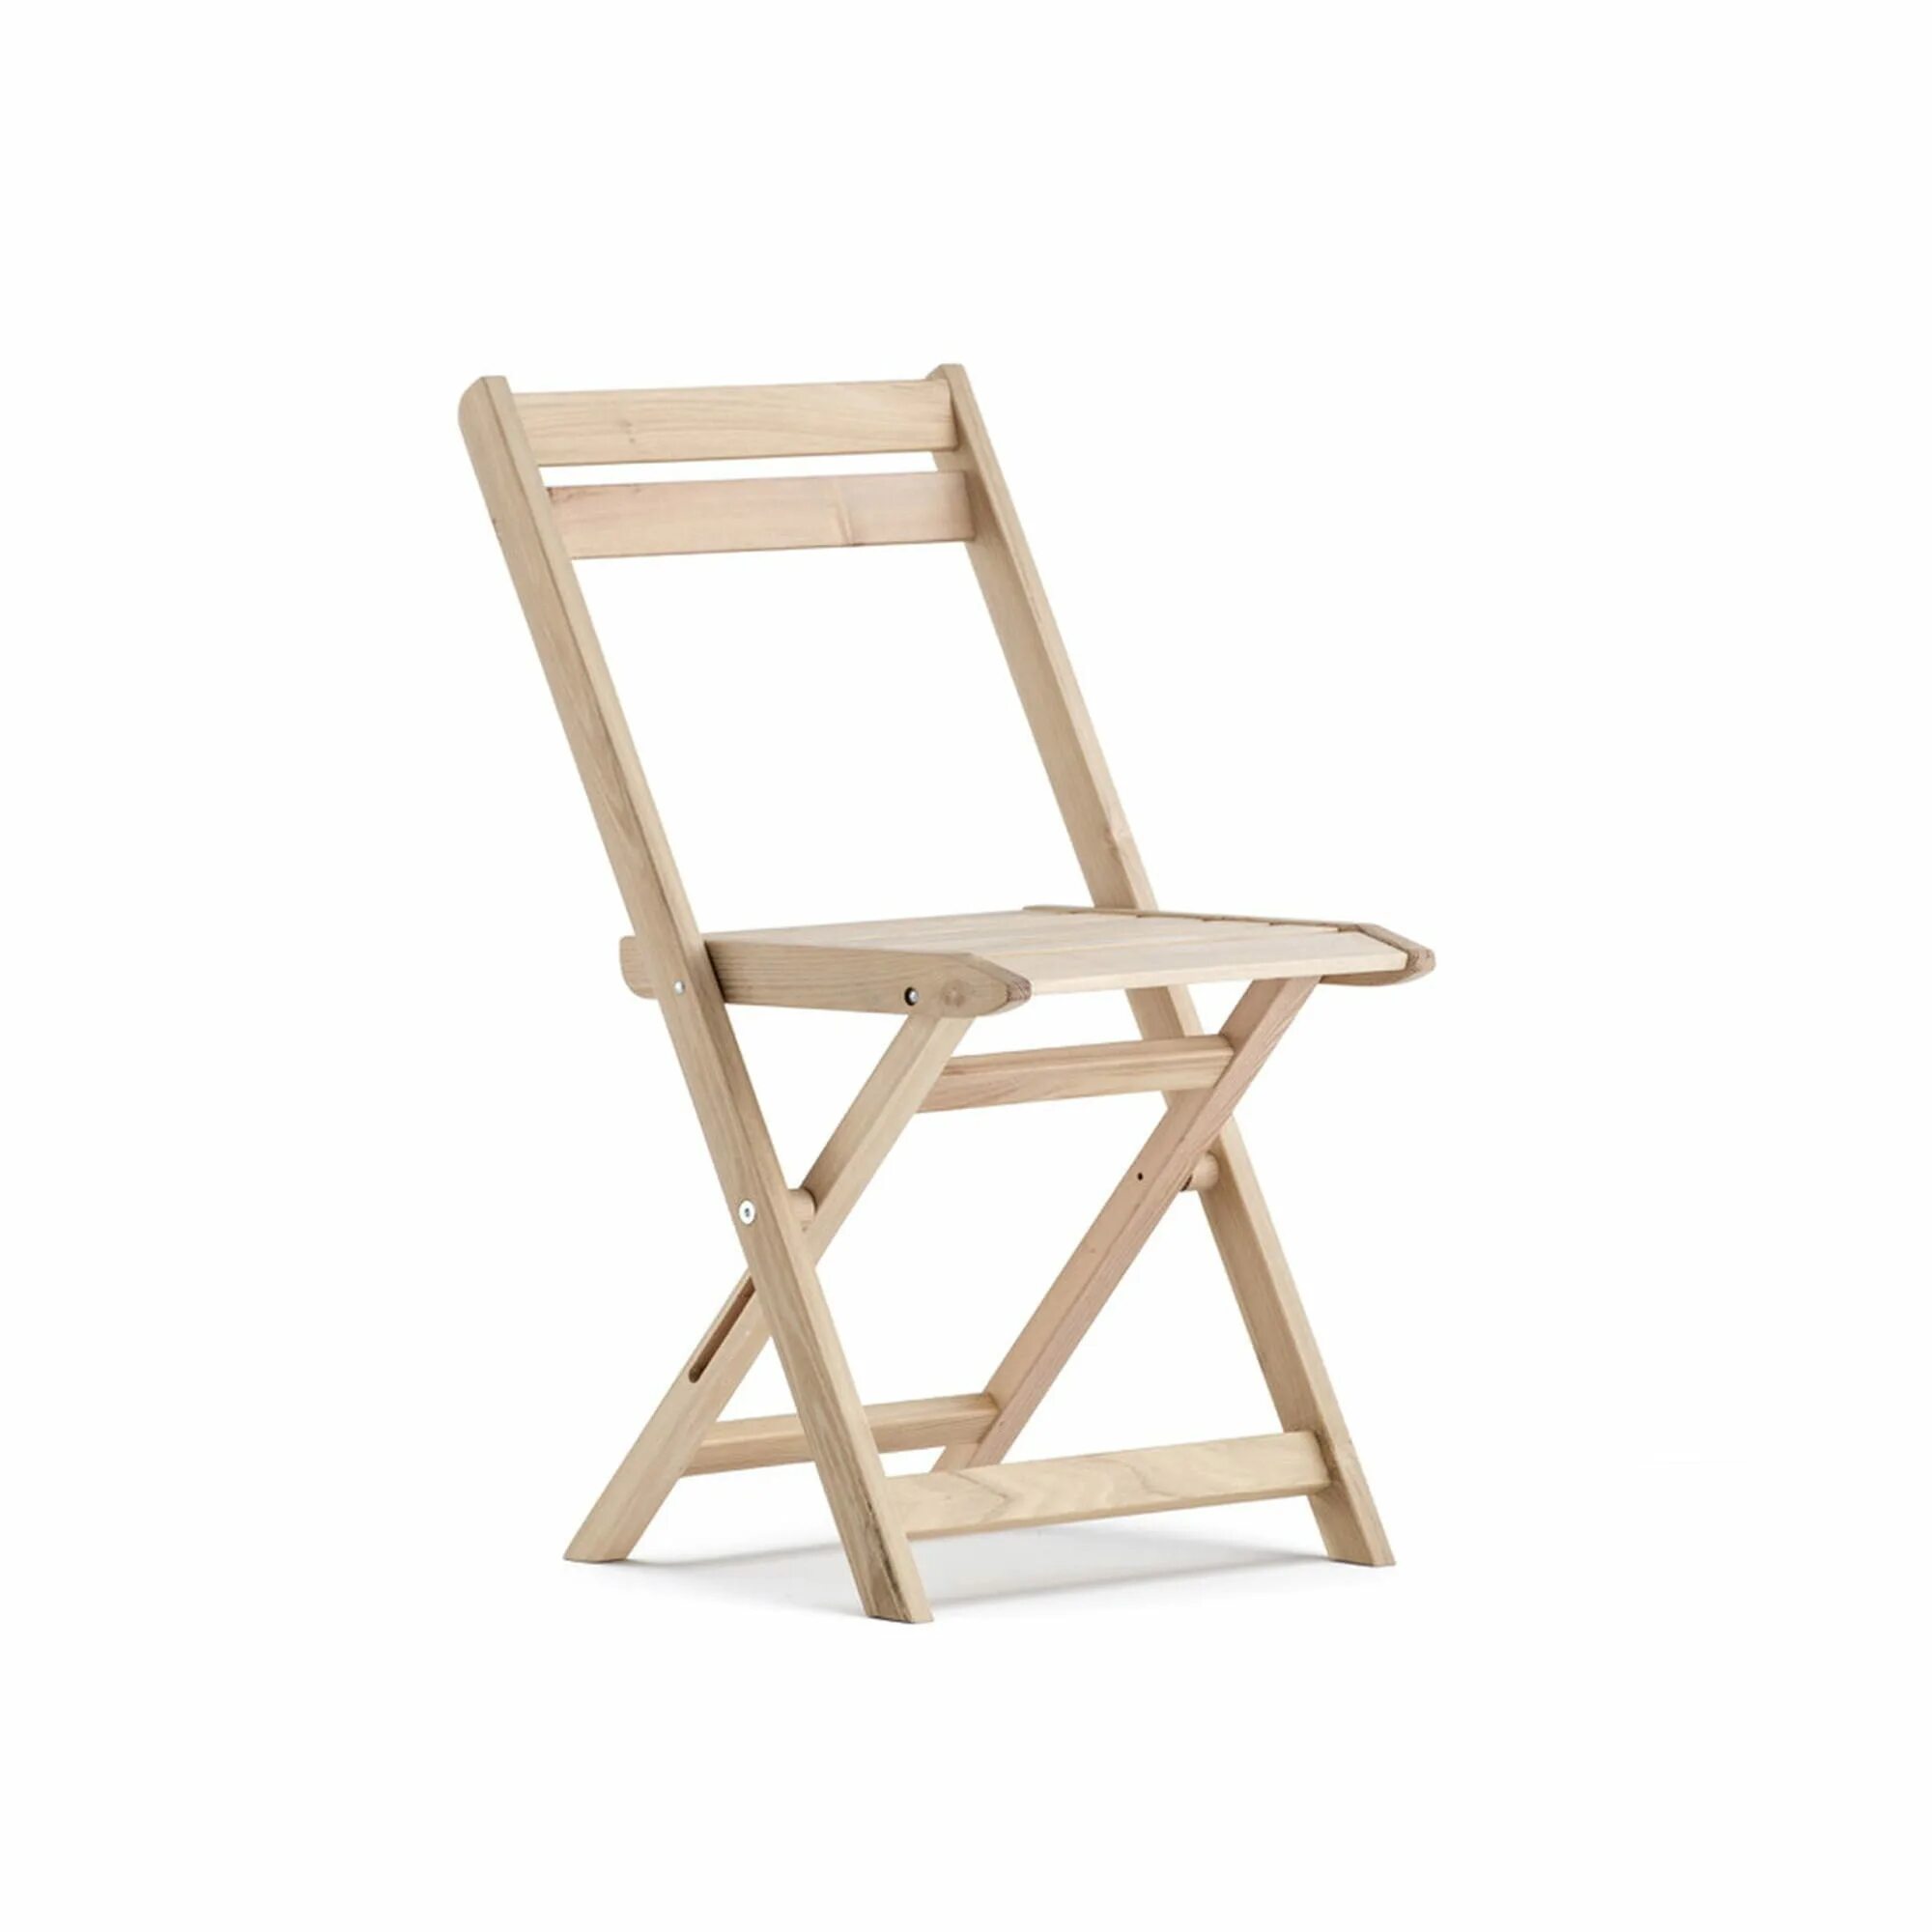 Леруа складной стул. Стул складной деревянный. Раскладной стул со спинкой из дерева. Складной стул дерево. Складной стул со спинкой из дерева.